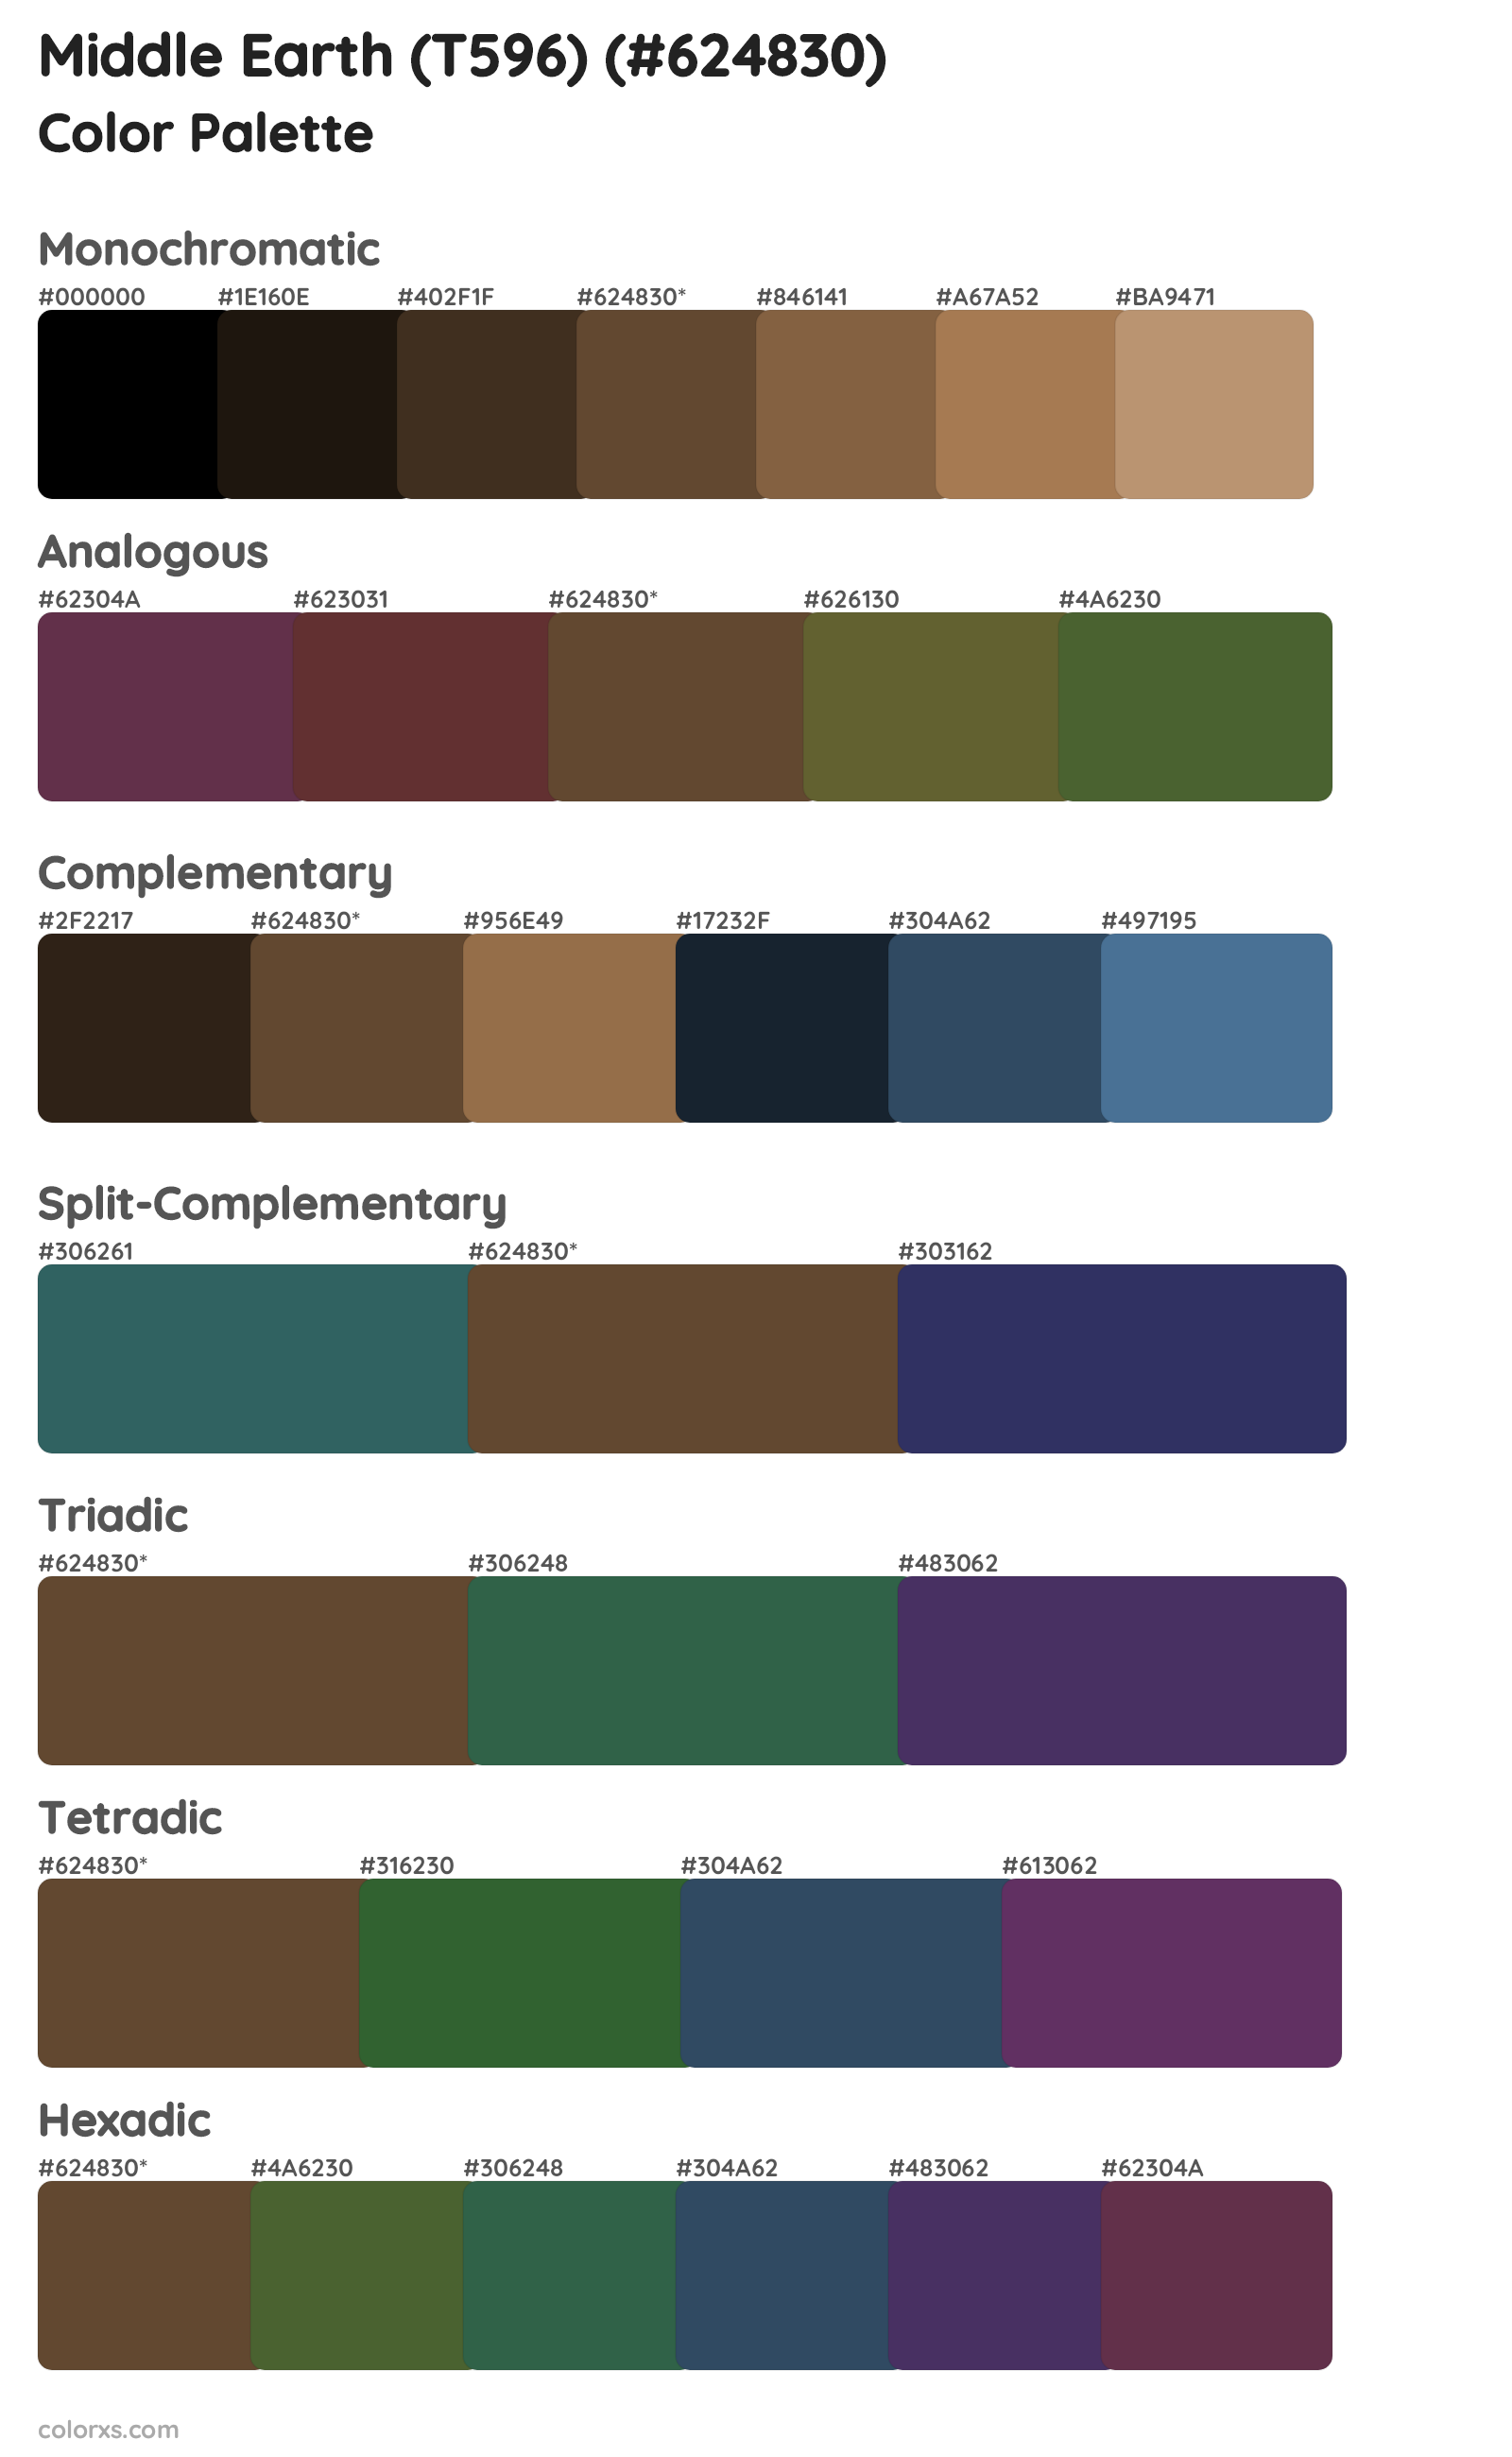 Middle Earth (T596) Color Scheme Palettes